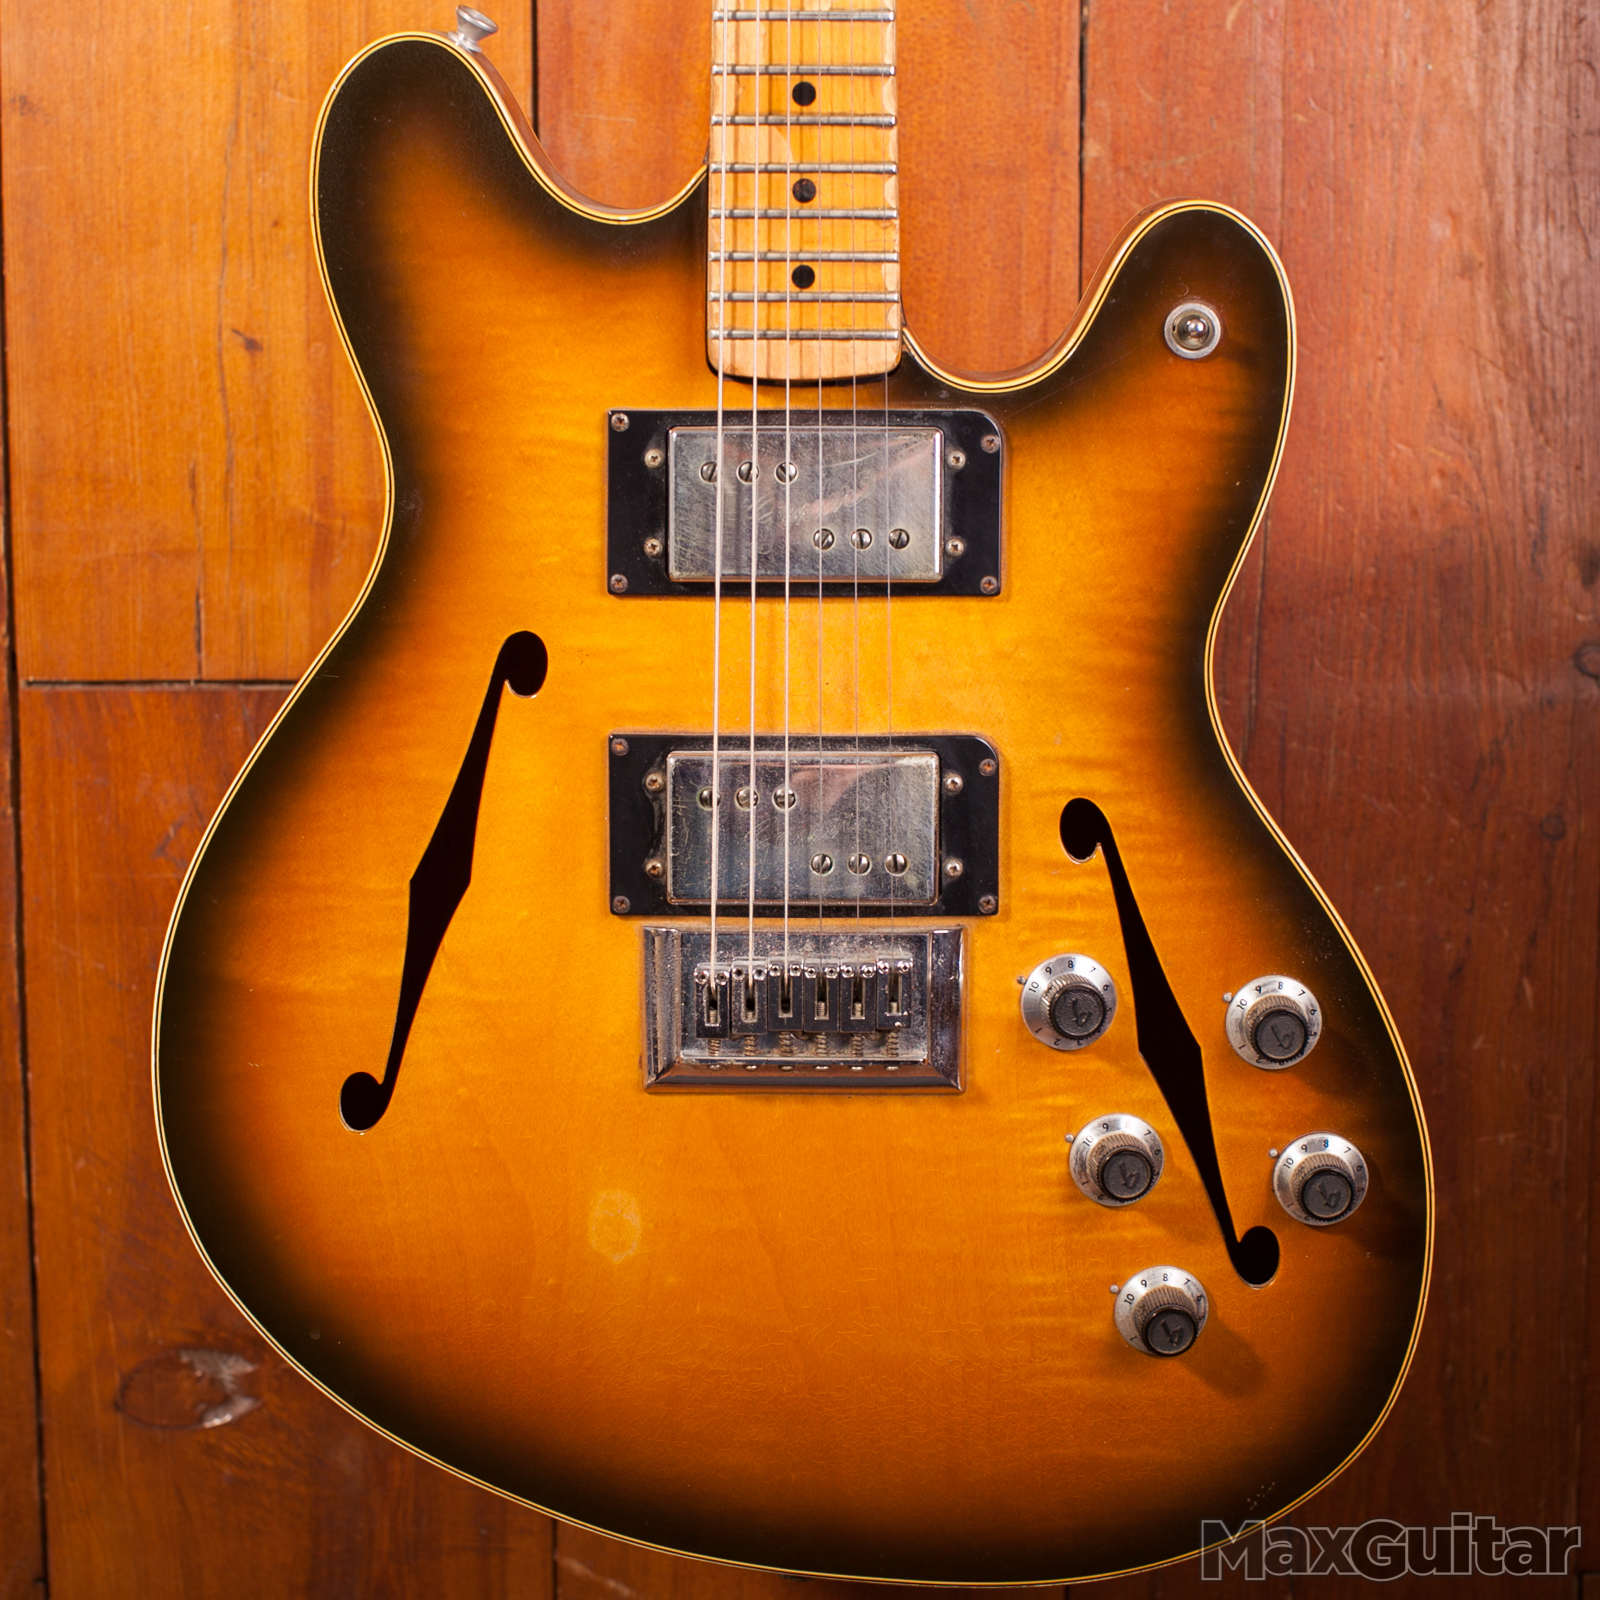 Fender Starcaster 1974 Sun Burst Guitar For Sale Max Guitar